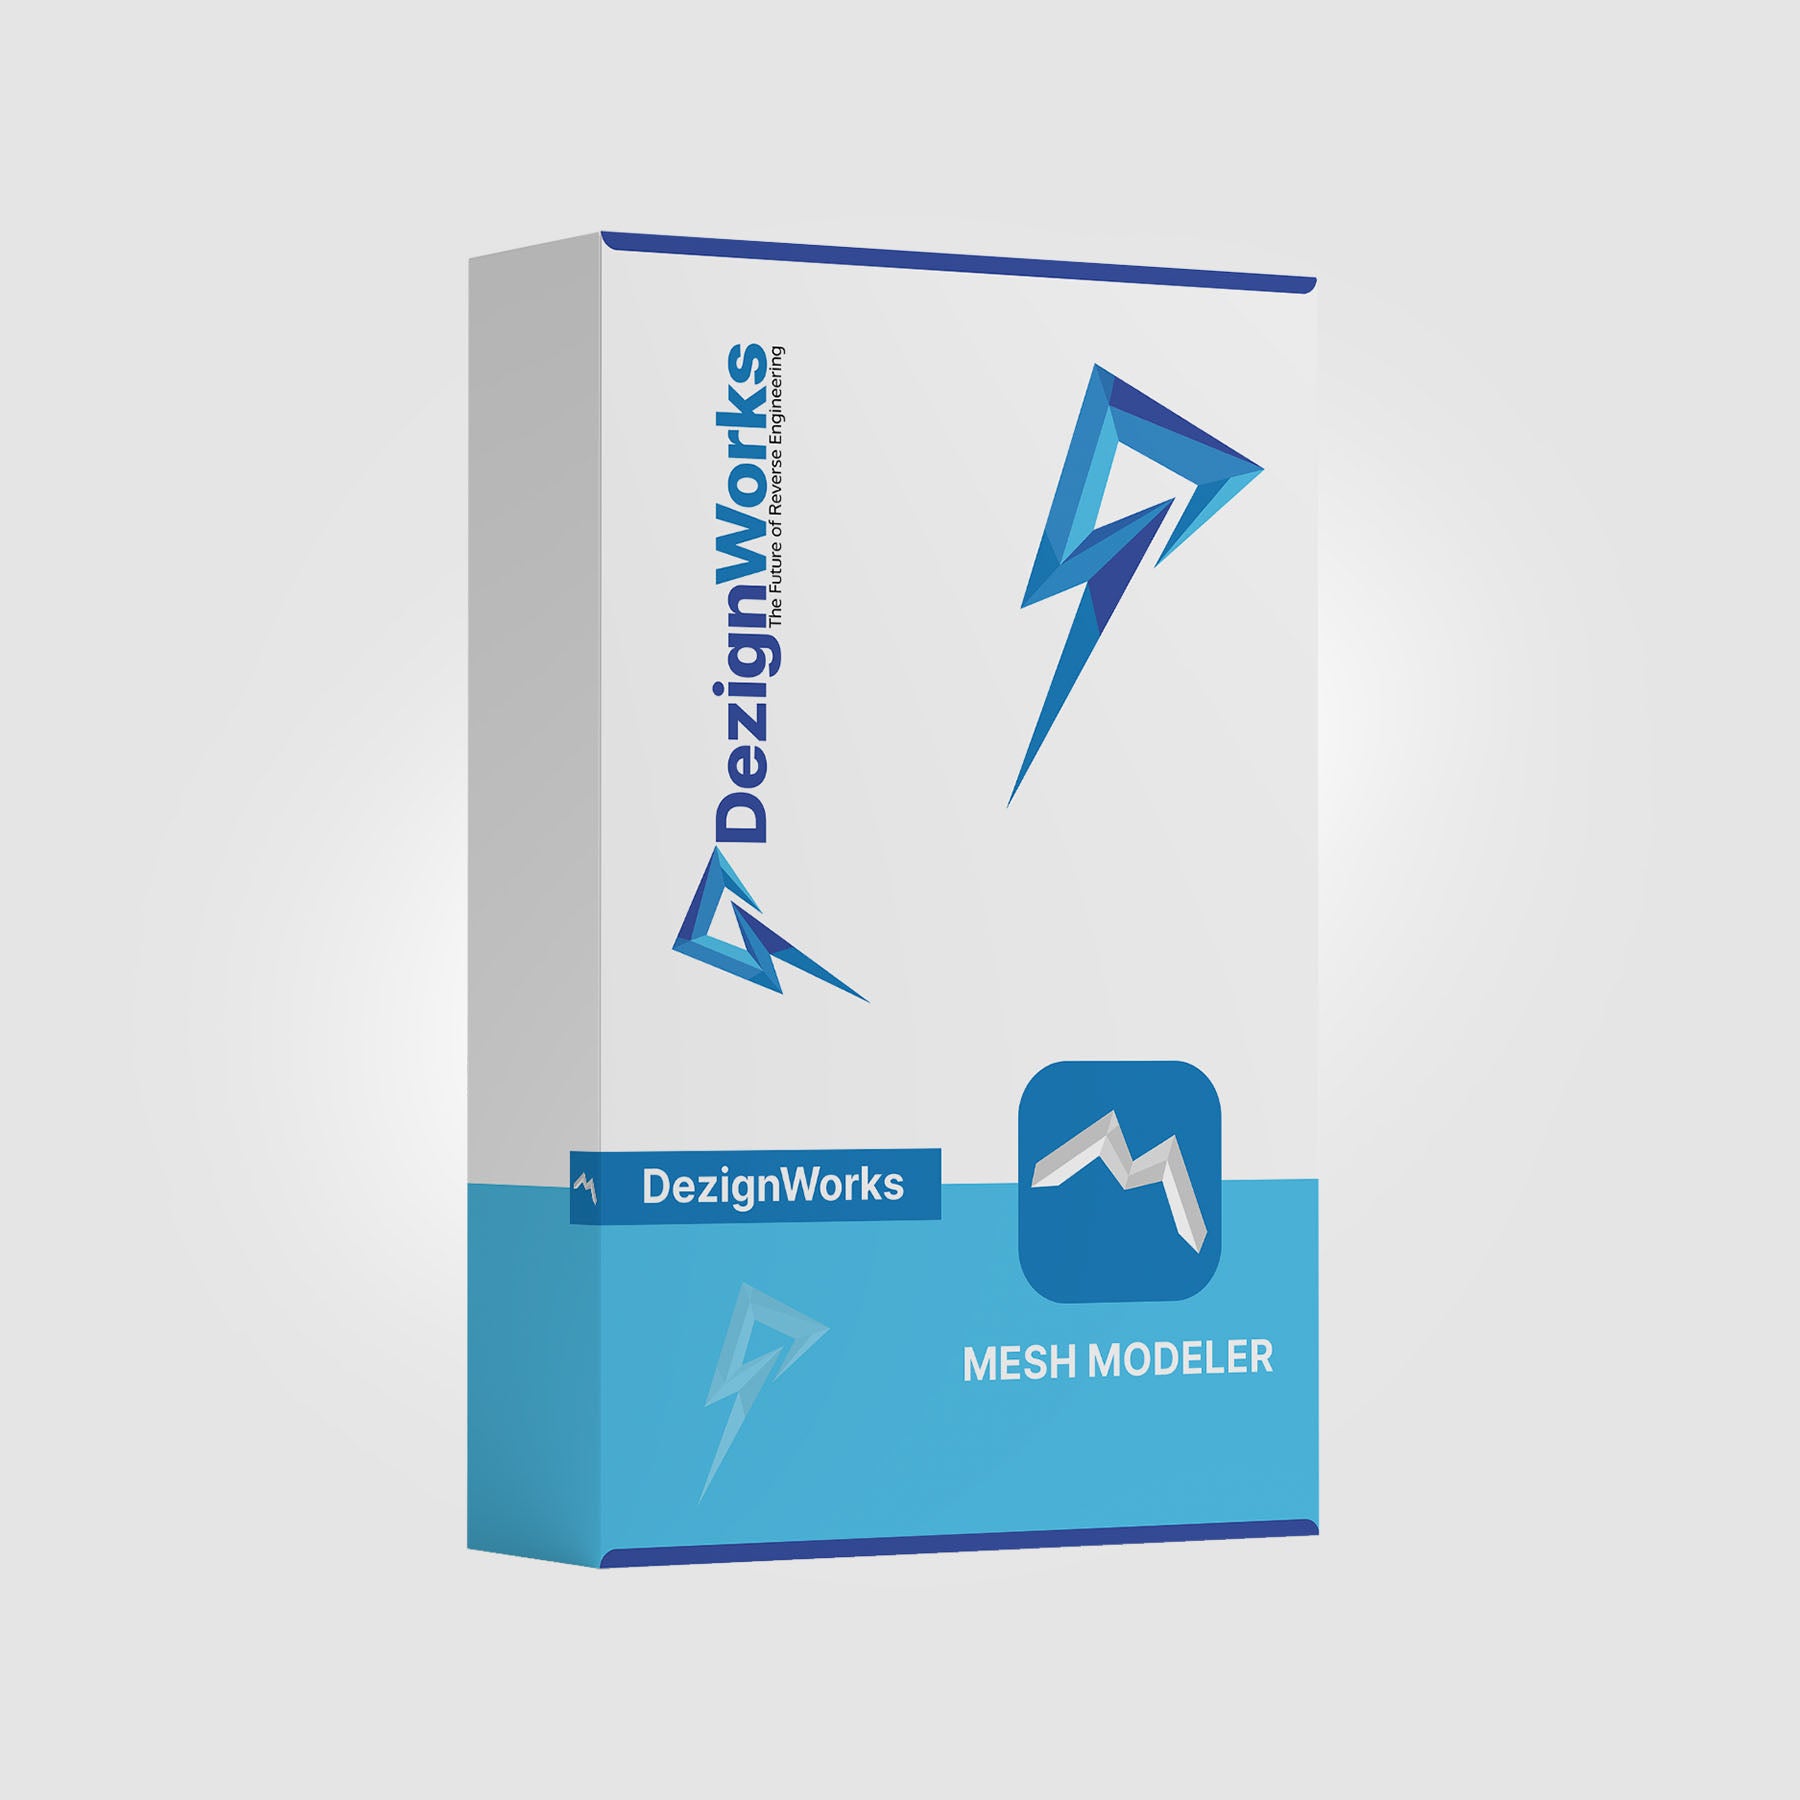 DezignWorks for AutoDesk Inventor - Mesh Modeler Version